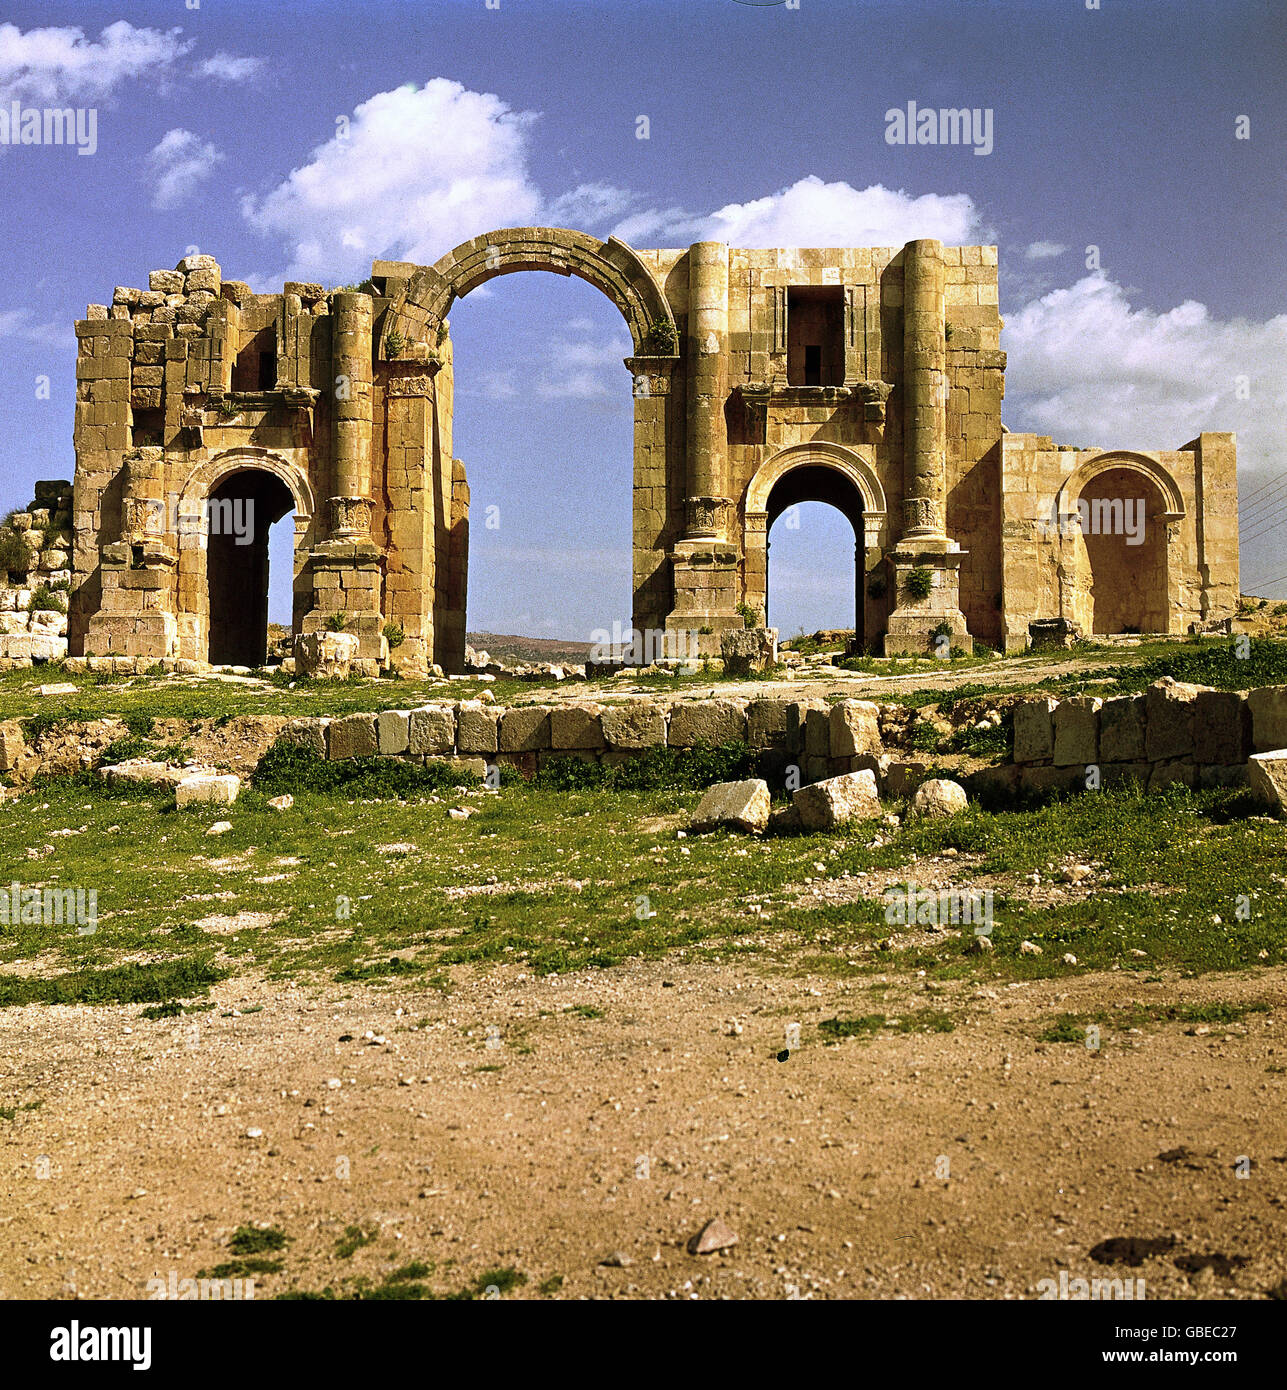 Géographie / Voyage, Jordanie, Jerash, ville romaine Gerasa 2./3. Century AD, arc triomphal, construit 129 AD en l'honneur de l'empereur Adrian, ruine, vers 1980, droits additionnels-Clearences-non disponible Banque D'Images